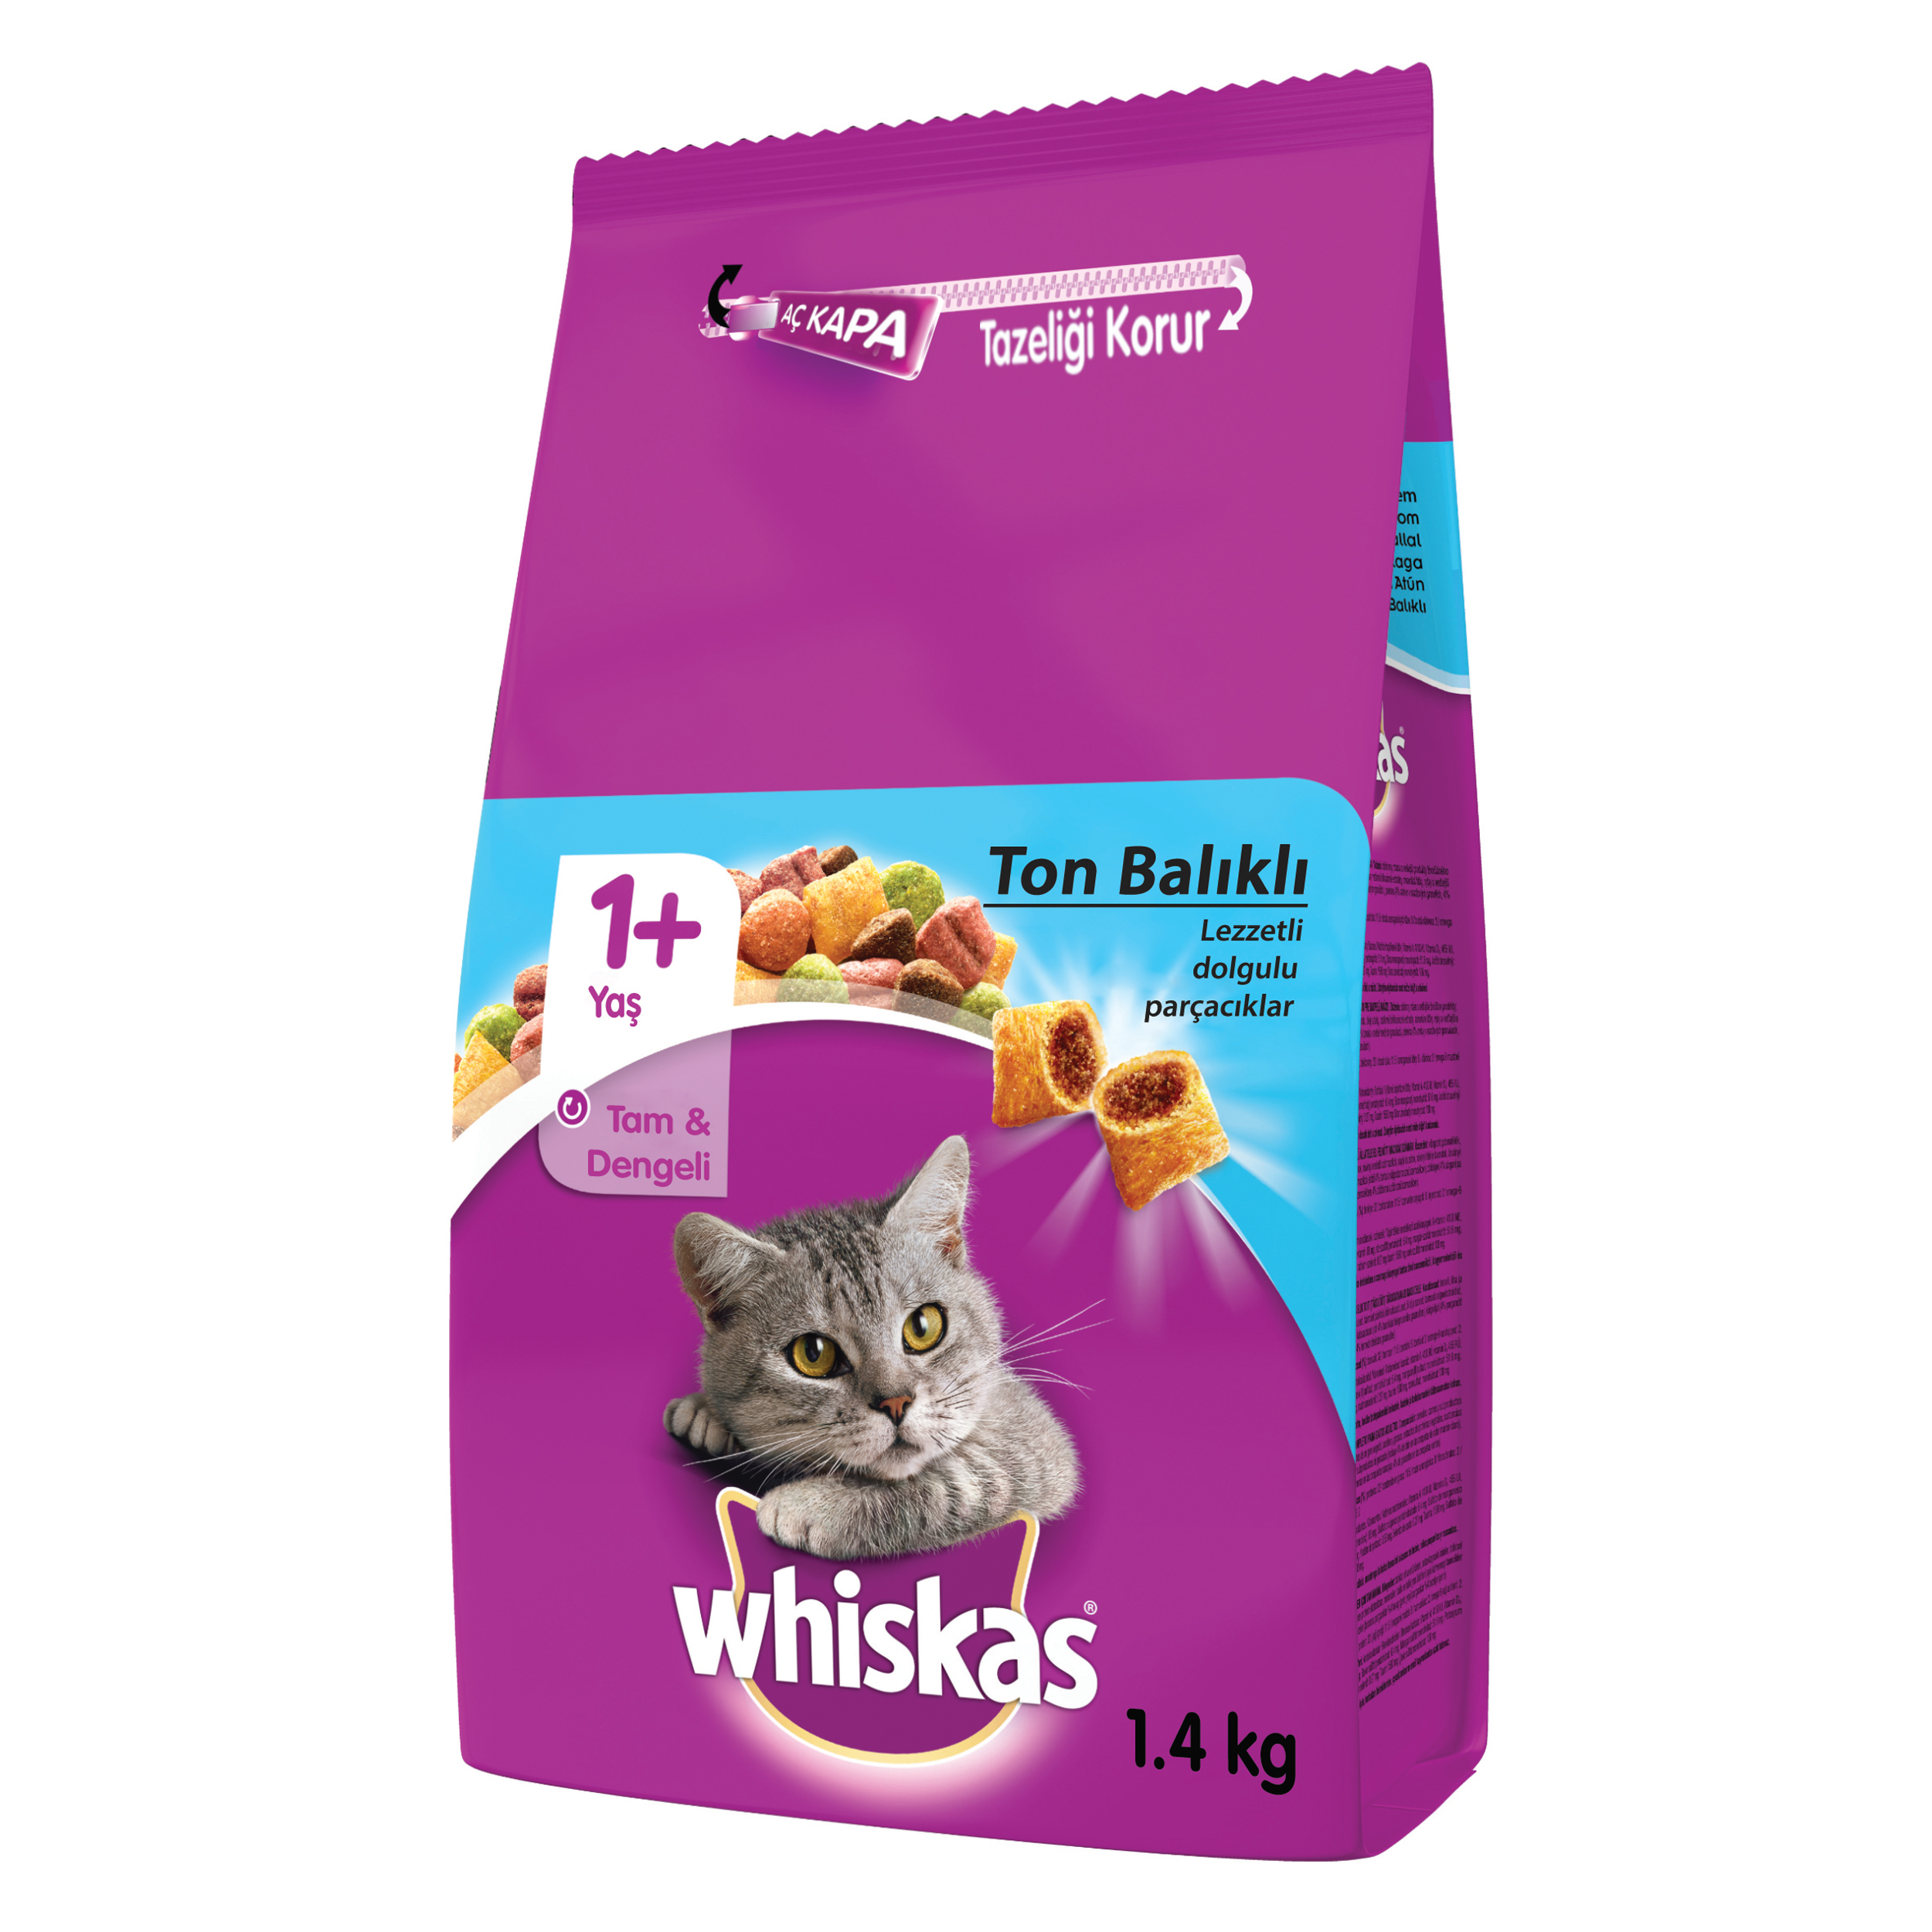 Whiskas Ton Balıklı ve Sebzeli Yetişkin Kedi Maması 1400 G